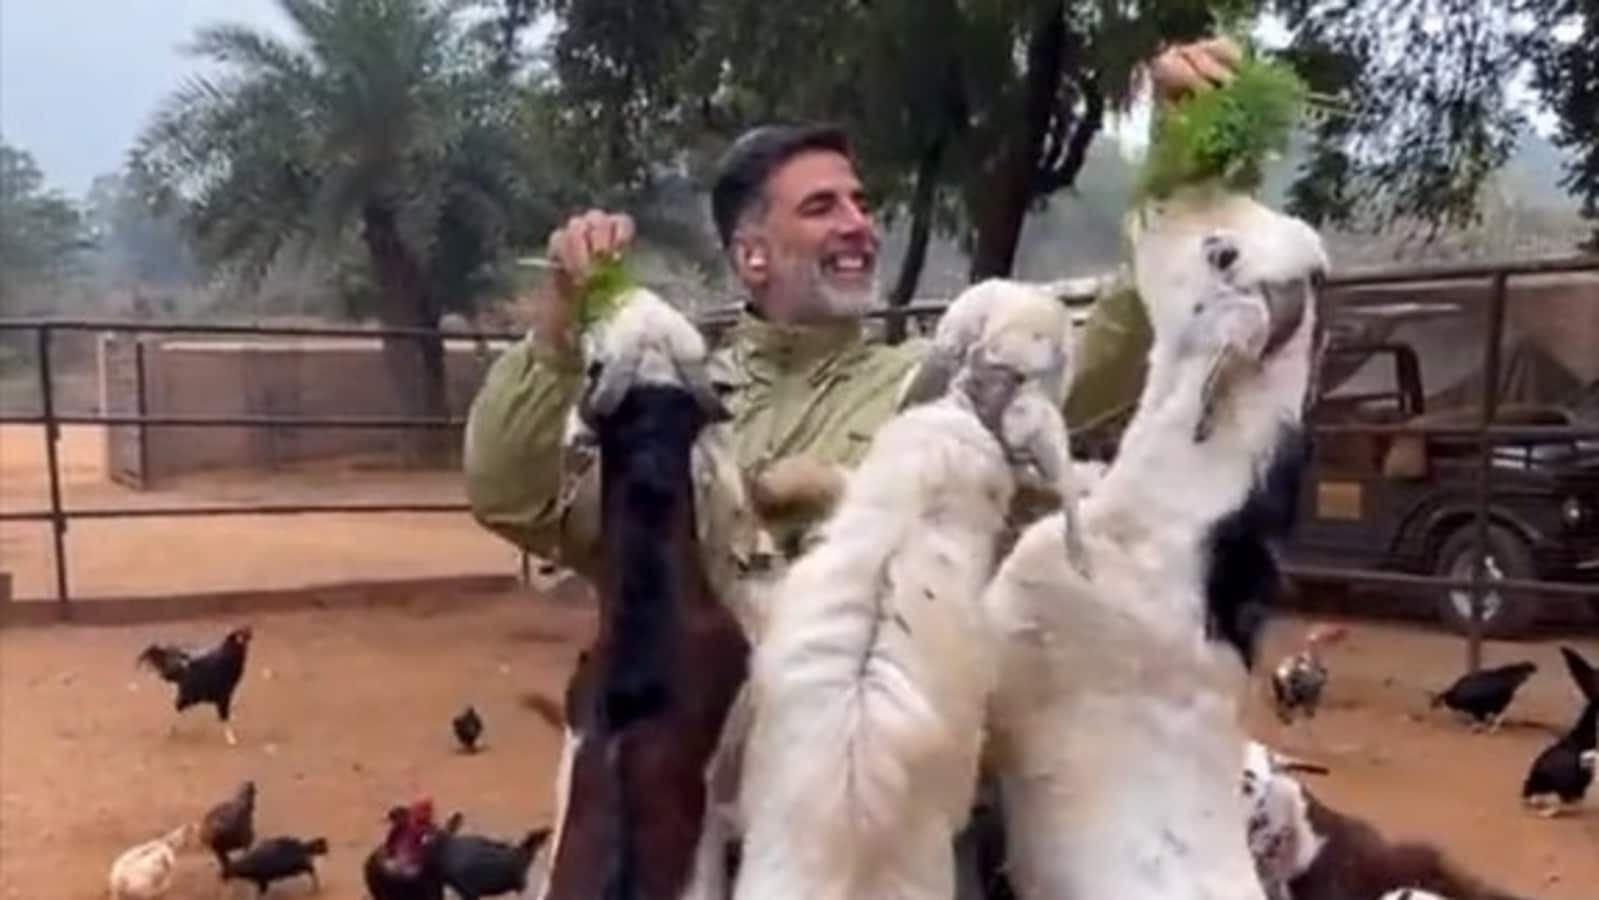 Akshay Kumar alimenta cabras en un nuevo video, un fan dice que también están haciendo "acrobacias" después de conocer a "Khiladi Kumar".  Reloj